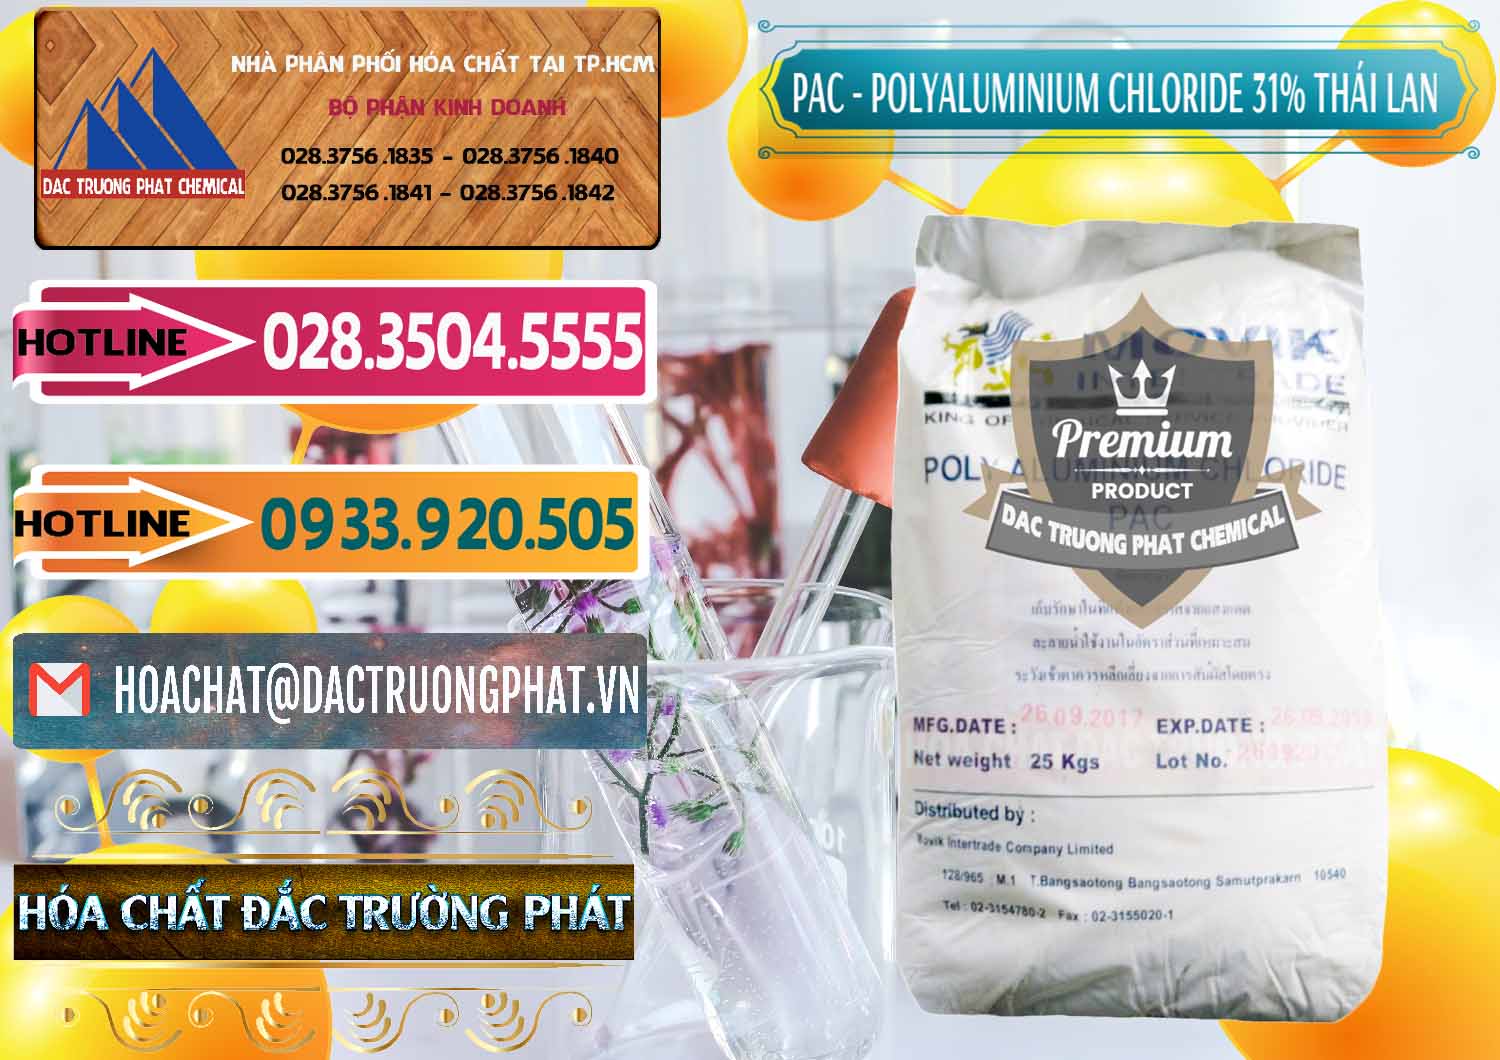 Công ty bán _ cung cấp PAC - Polyaluminium Chloride 31% Thái Lan Thailand - 0469 - Cty nhập khẩu và phân phối hóa chất tại TP.HCM - dactruongphat.vn